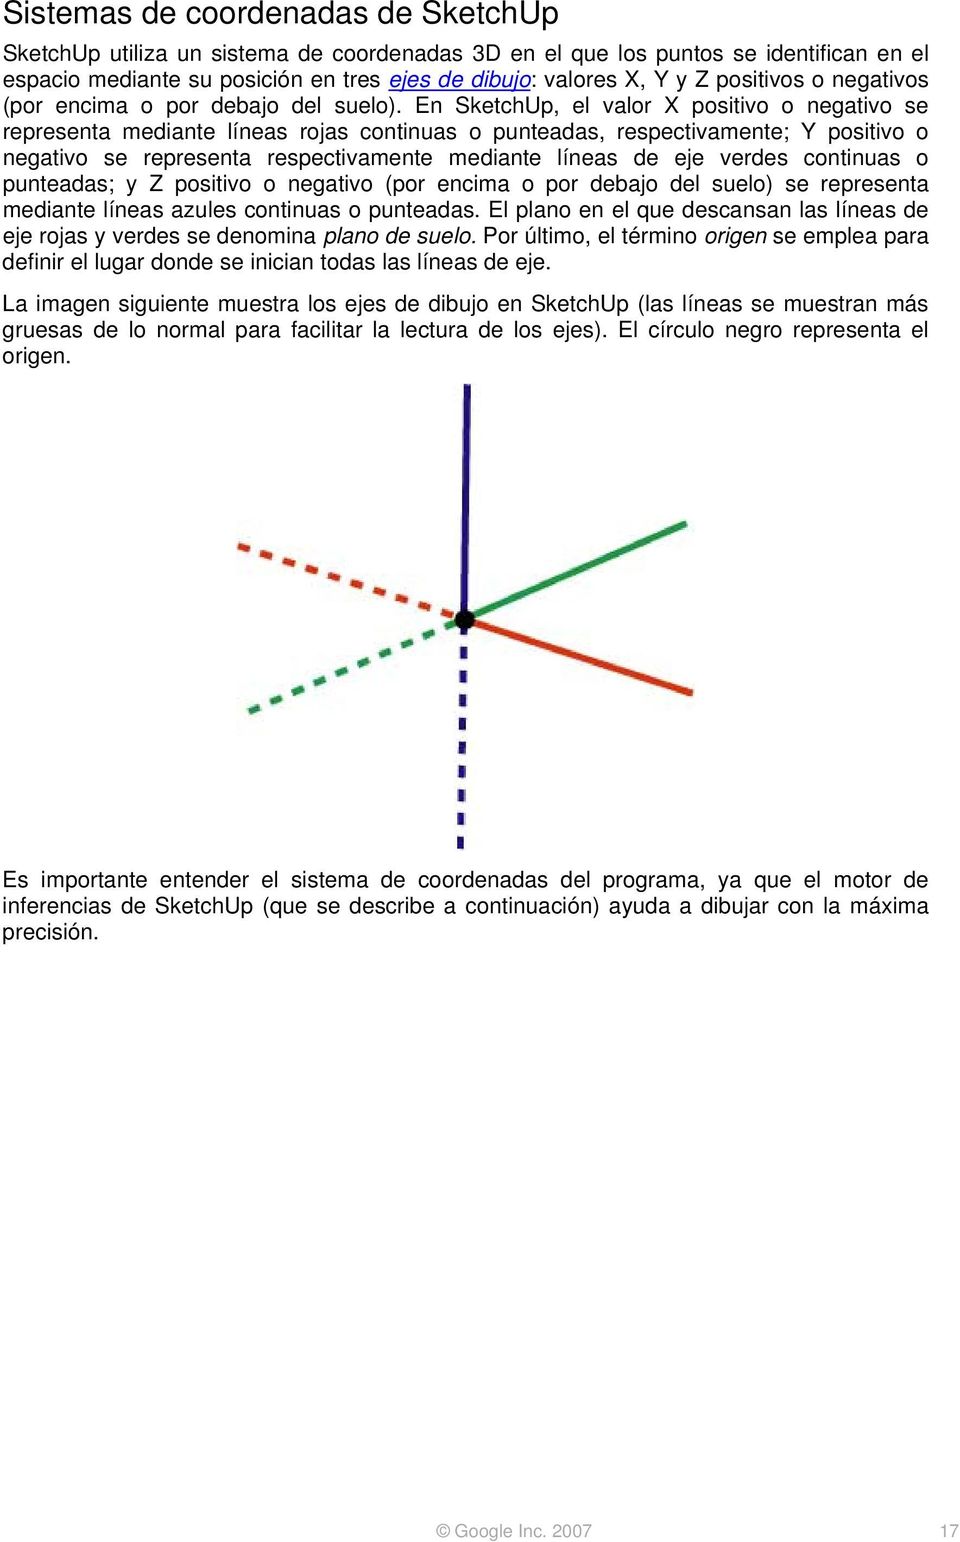 En SketchUp, el valor X positivo o negativo se representa mediante líneas rojas continuas o punteadas, respectivamente; Y positivo o negativo se representa respectivamente mediante líneas de eje